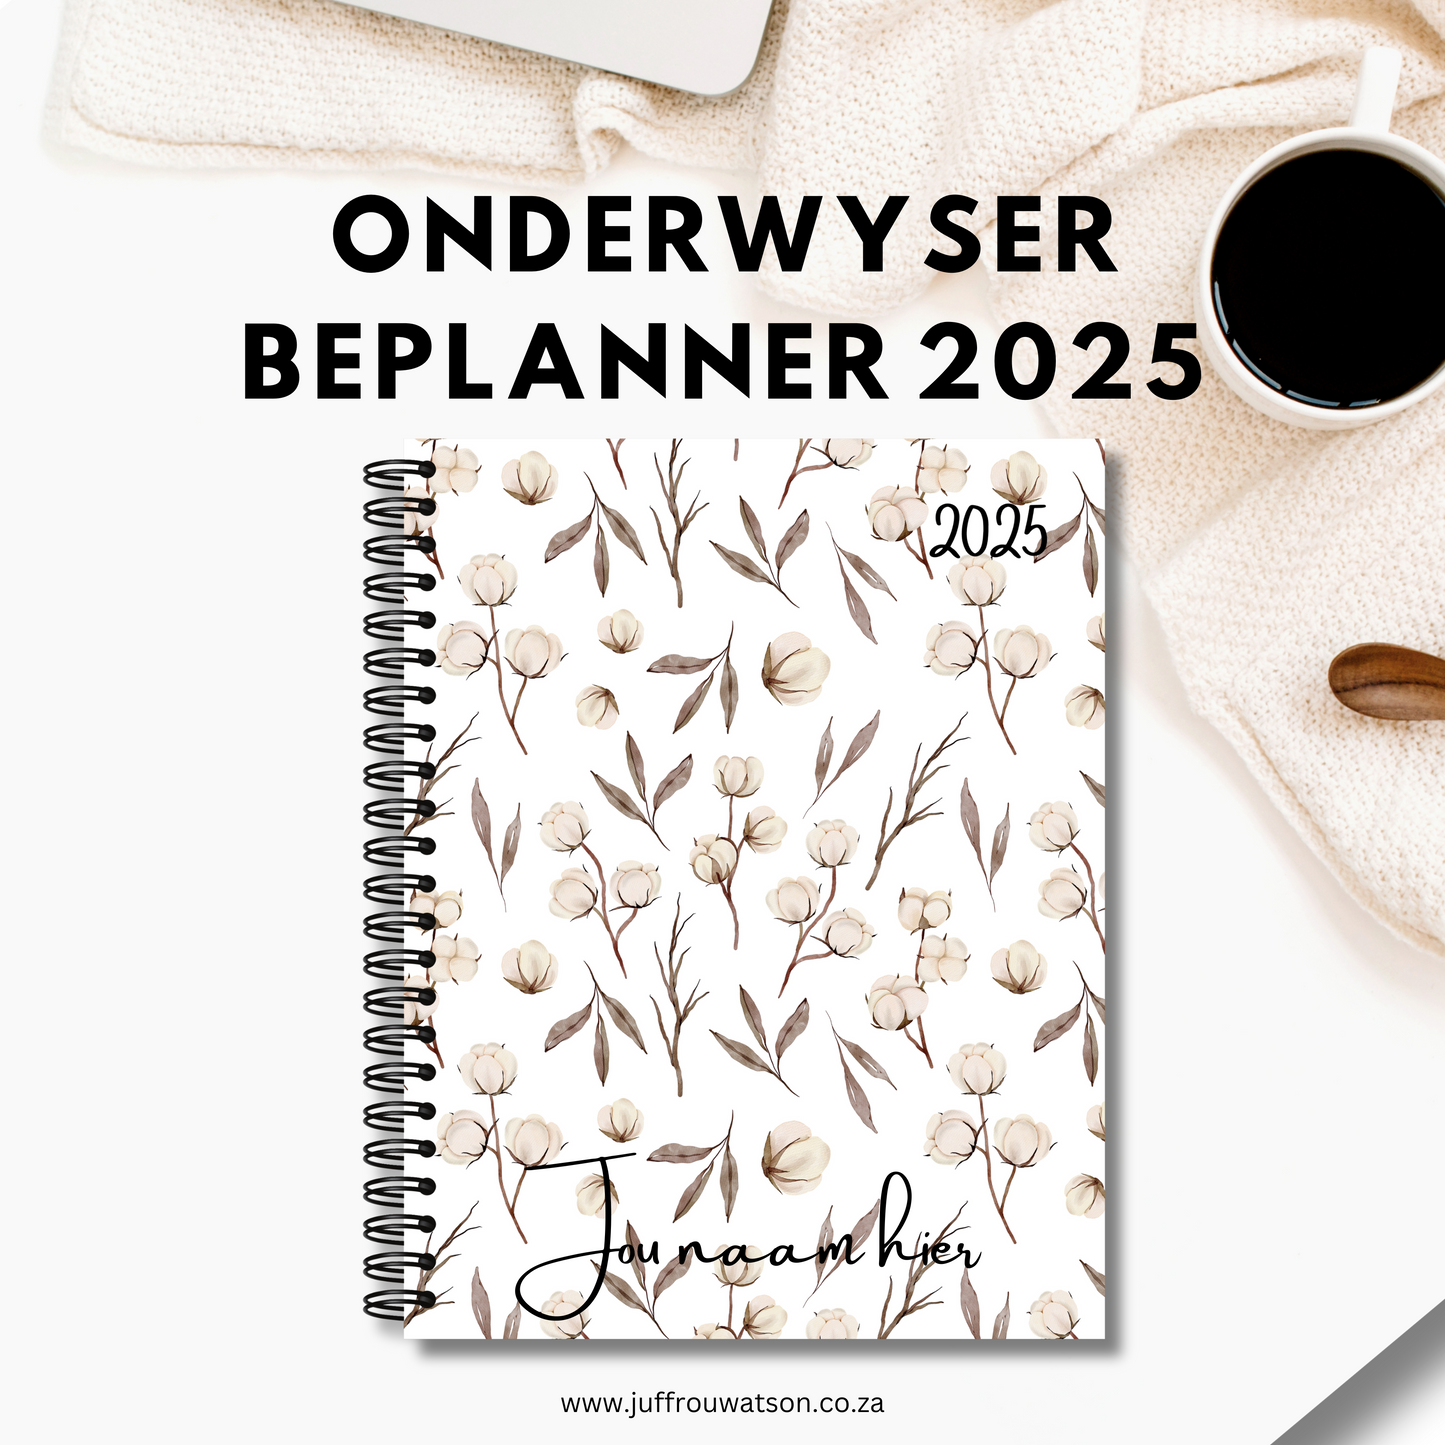 2025 Teacher Planner - Blossom